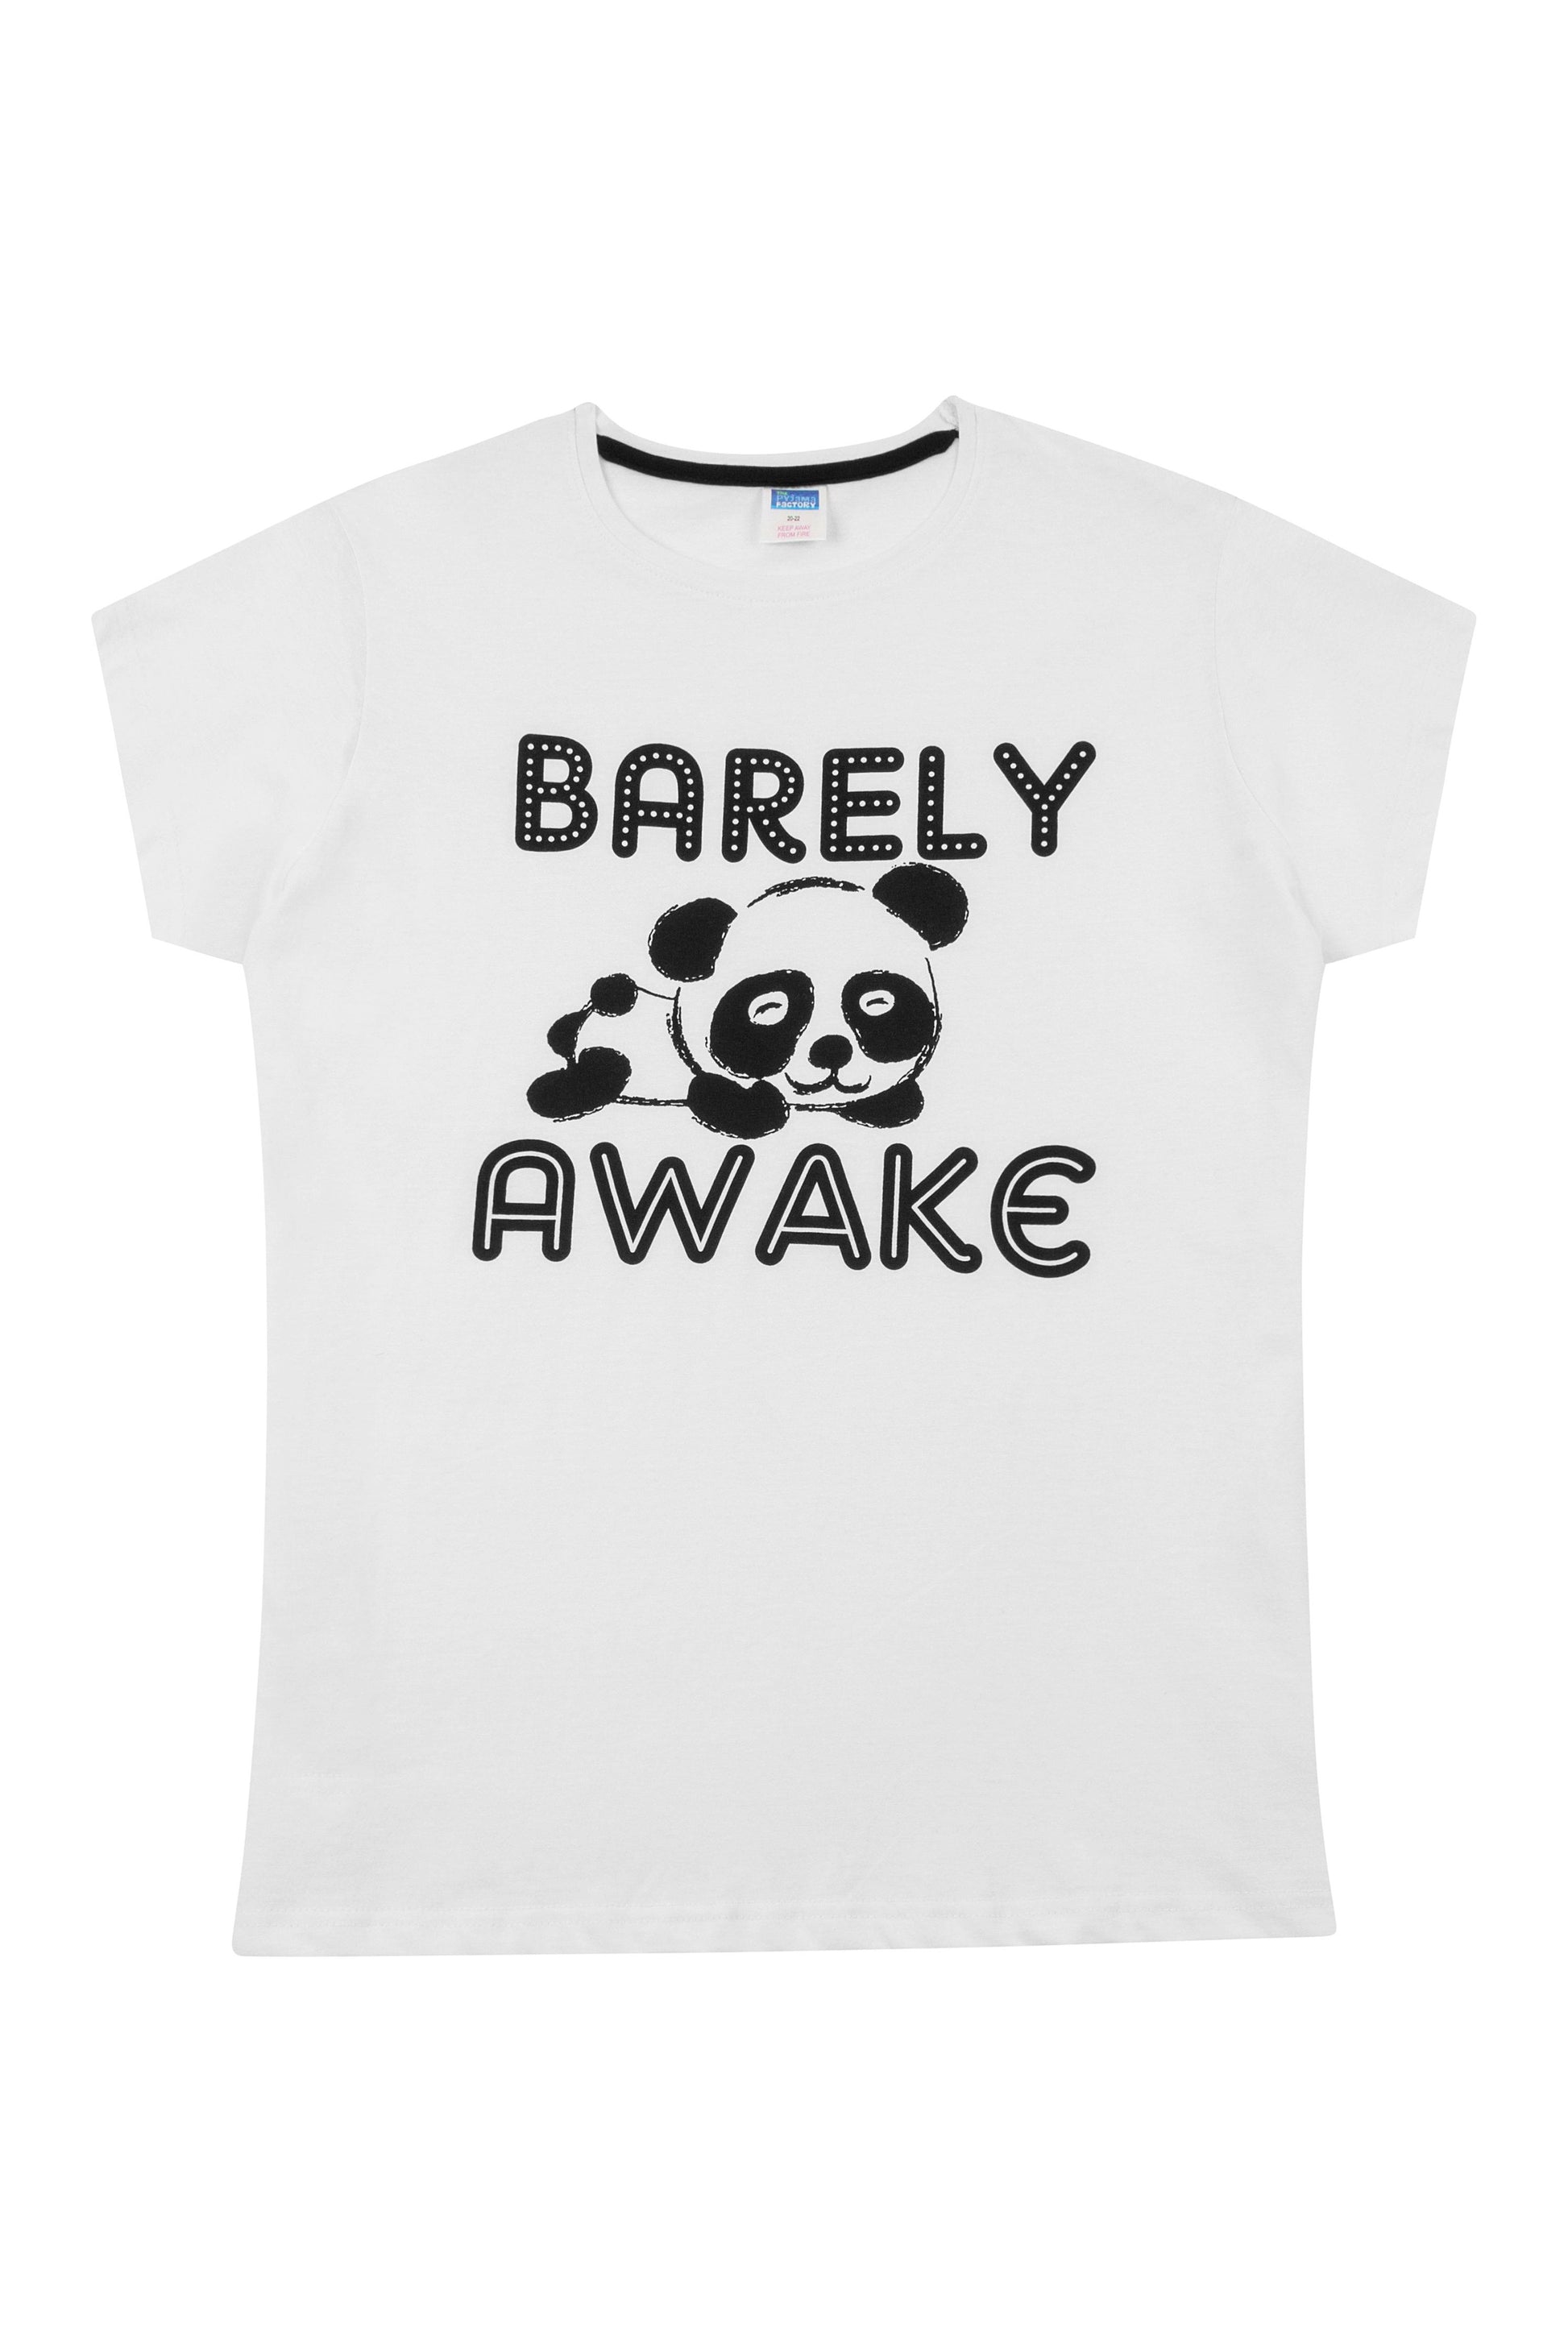 Ladies Barely Awake Panda Short Pyjamas - Pyjamas.com